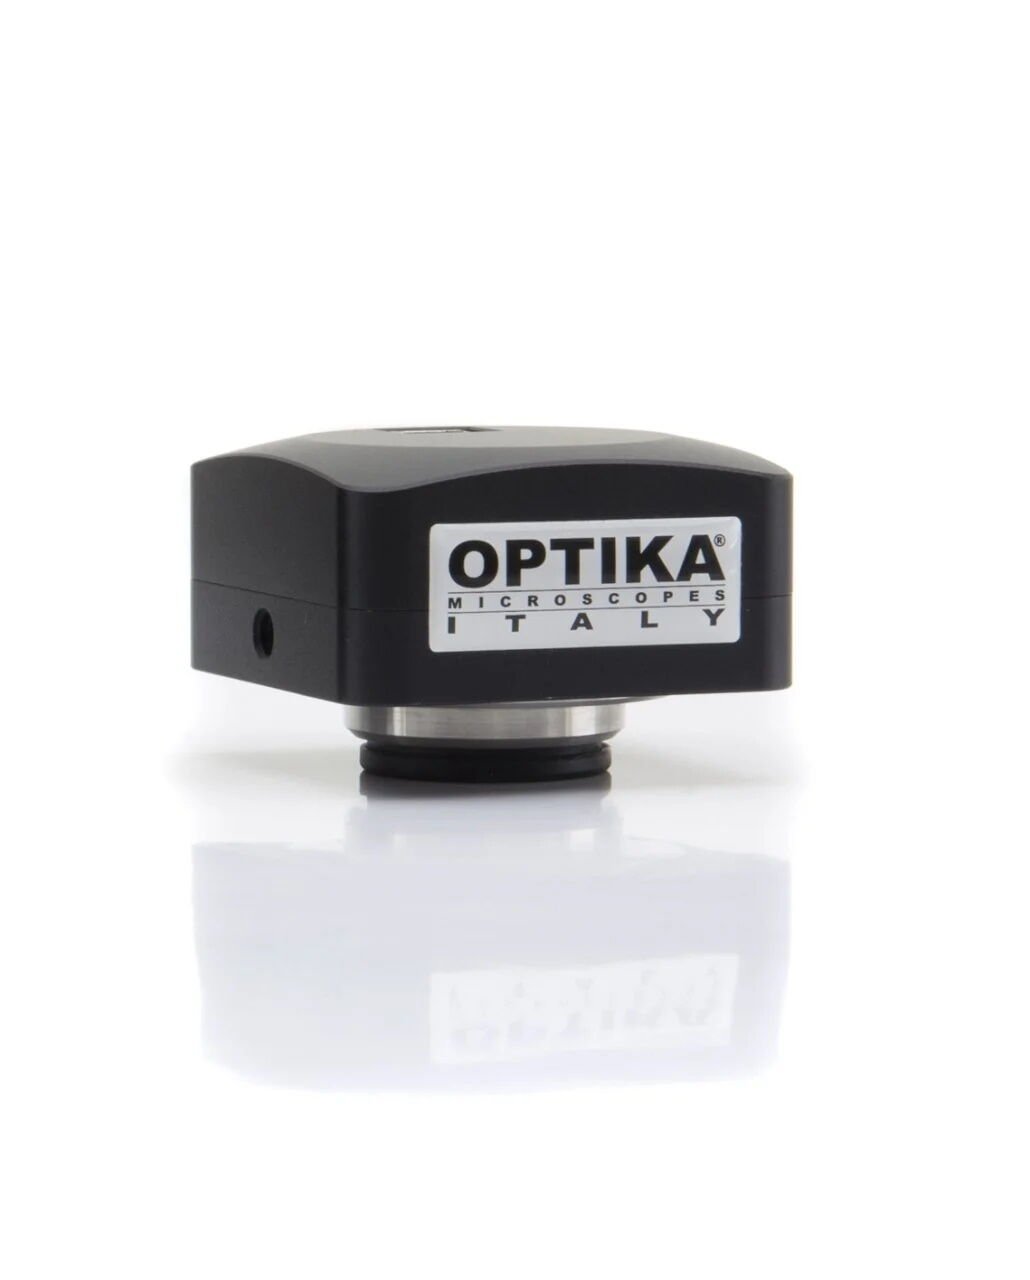 OPTIKA C-B5 Dijital Mikroskop Kamerası 5.1 MP CMOS, USB2.0